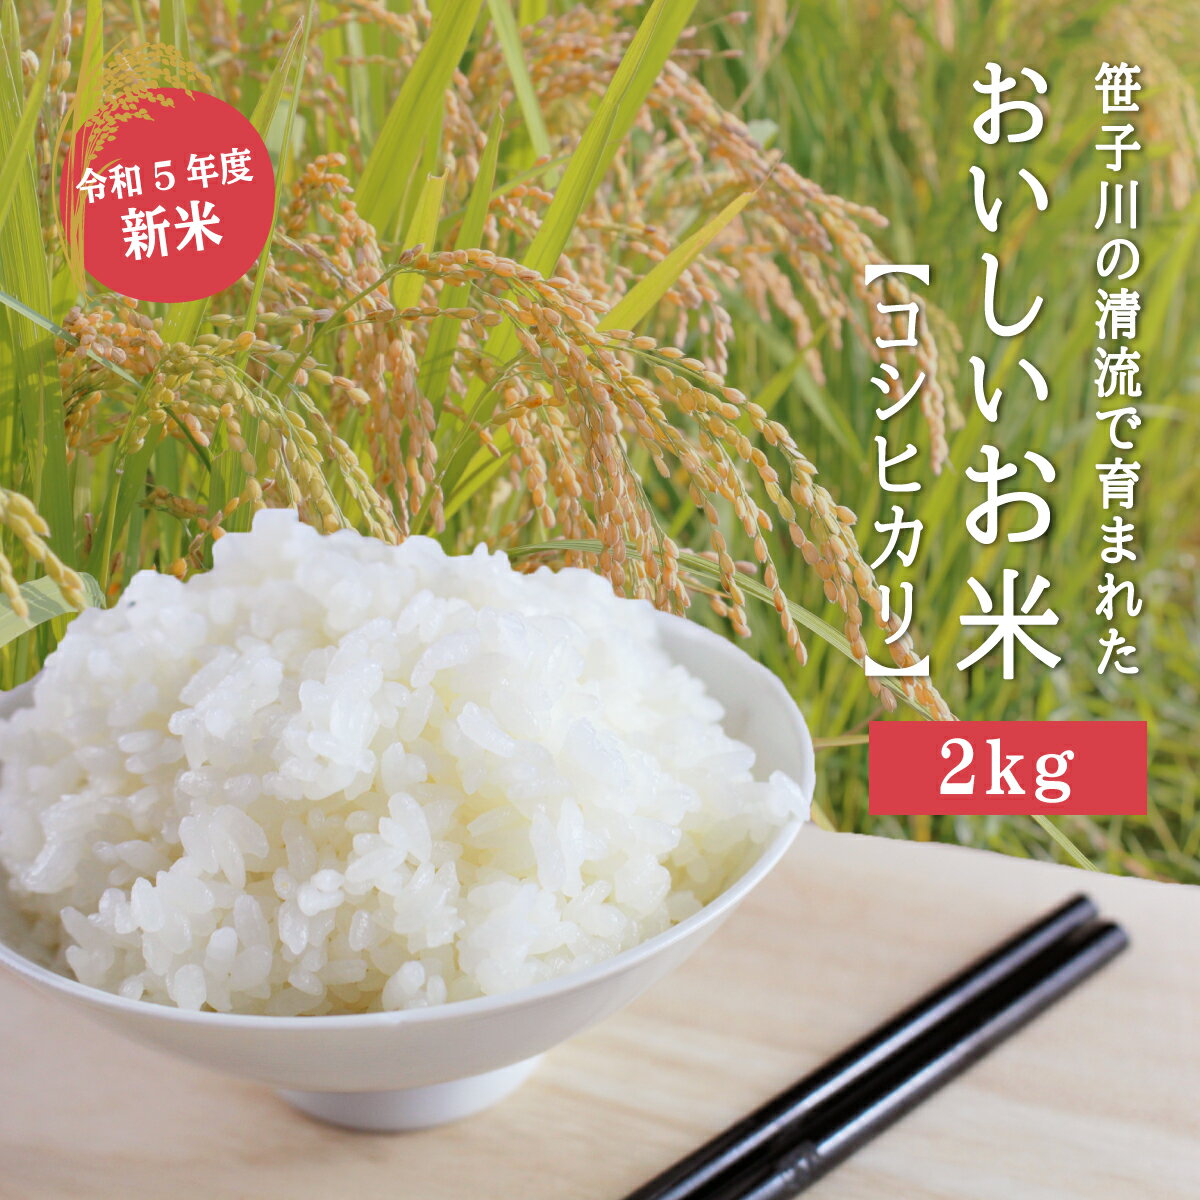 7位! 口コミ数「0件」評価「0」笹子川の清流で育まれたおいしいお米(コシヒカリ) 2kg